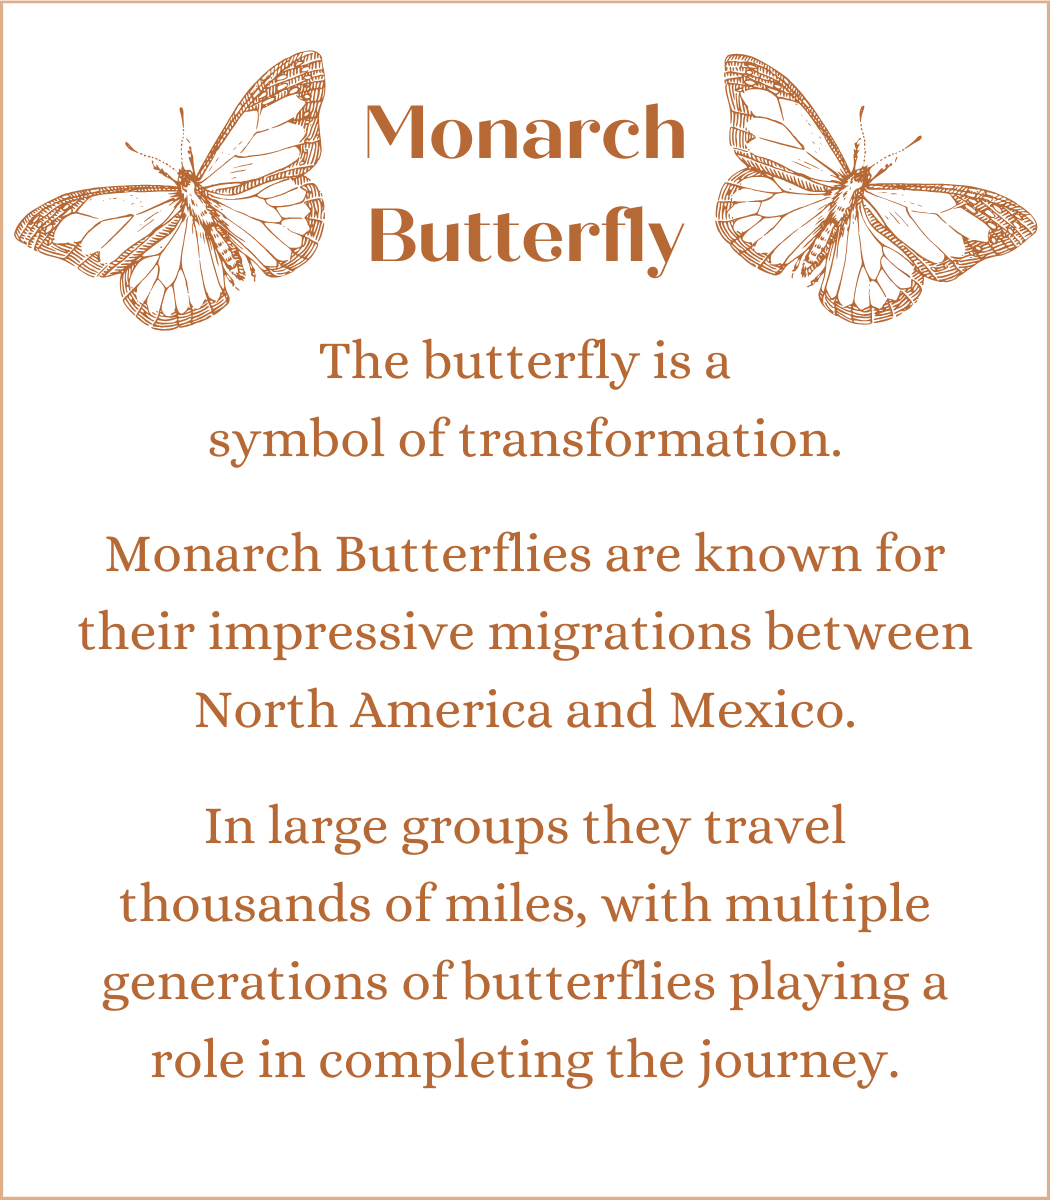 Monarch Butterfly in Gaia